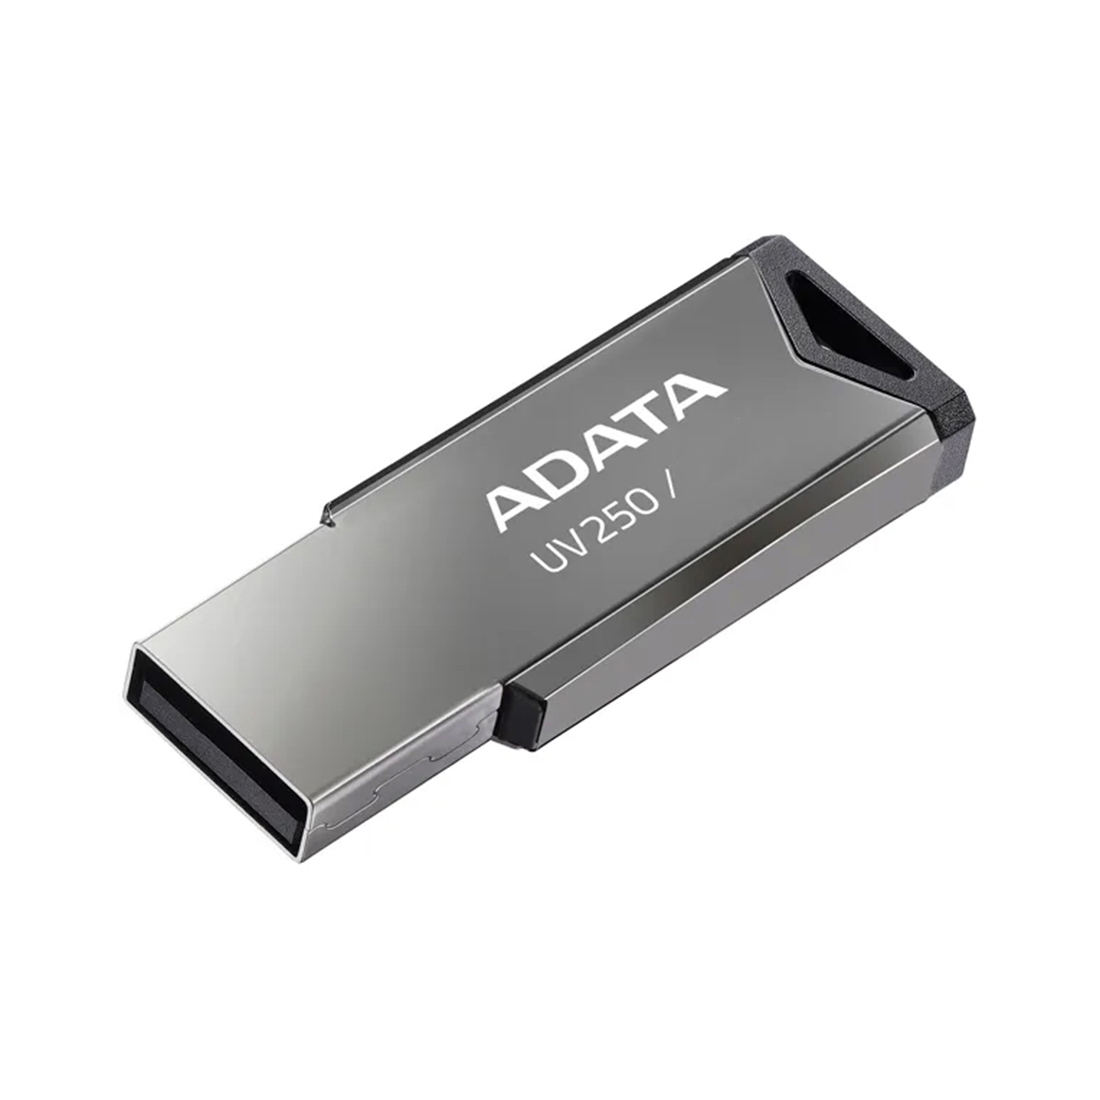 Flash DRIVE USB 32Gb AUV250 (Adata)